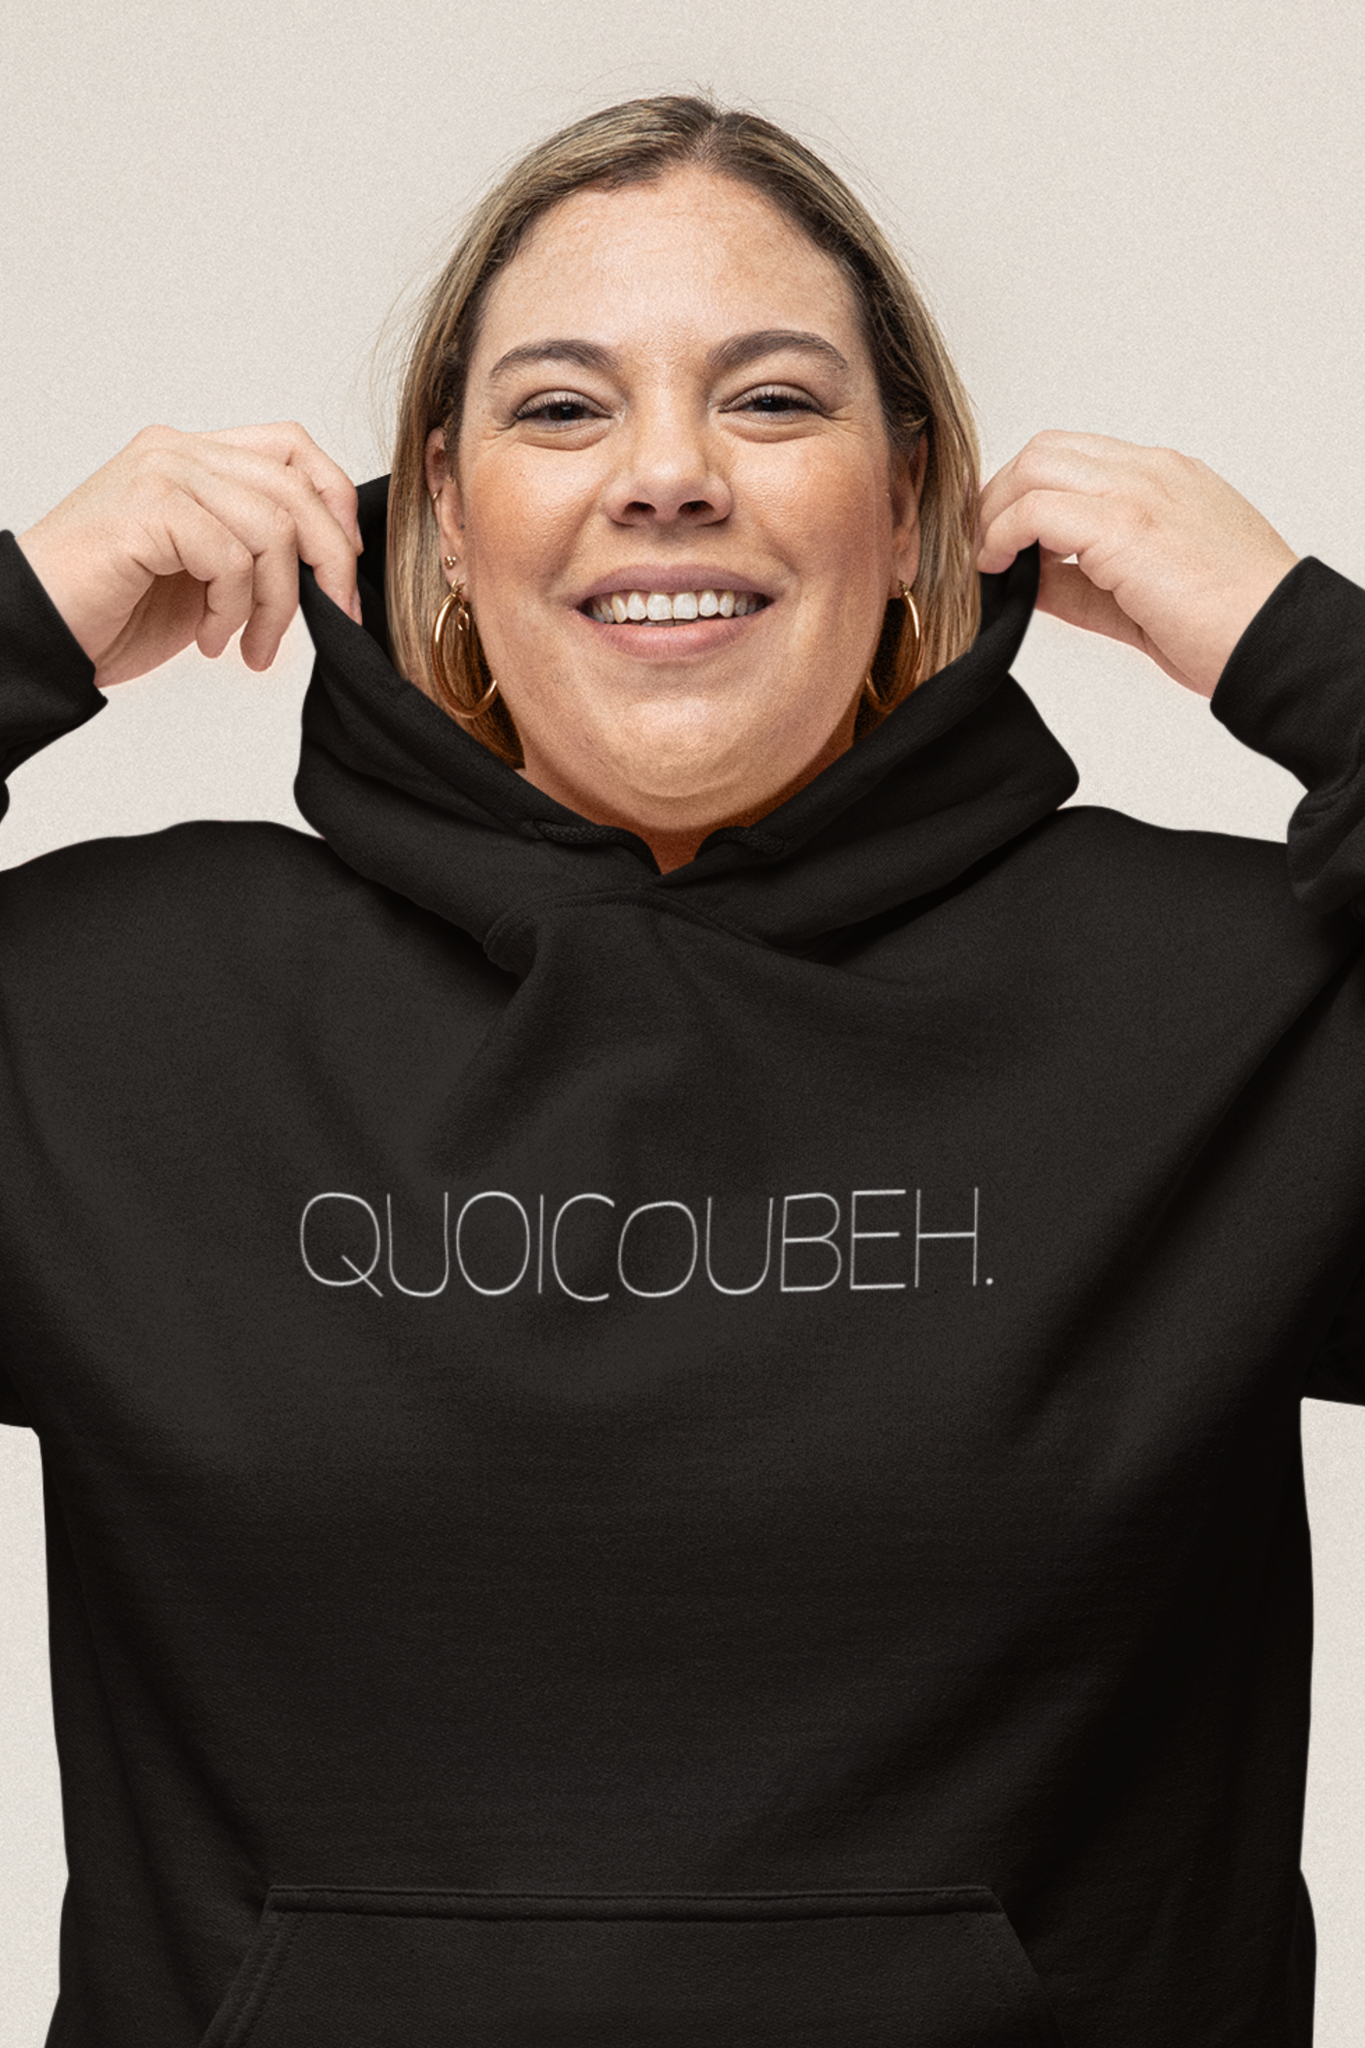 Coton Ouaté Quoicoubeh